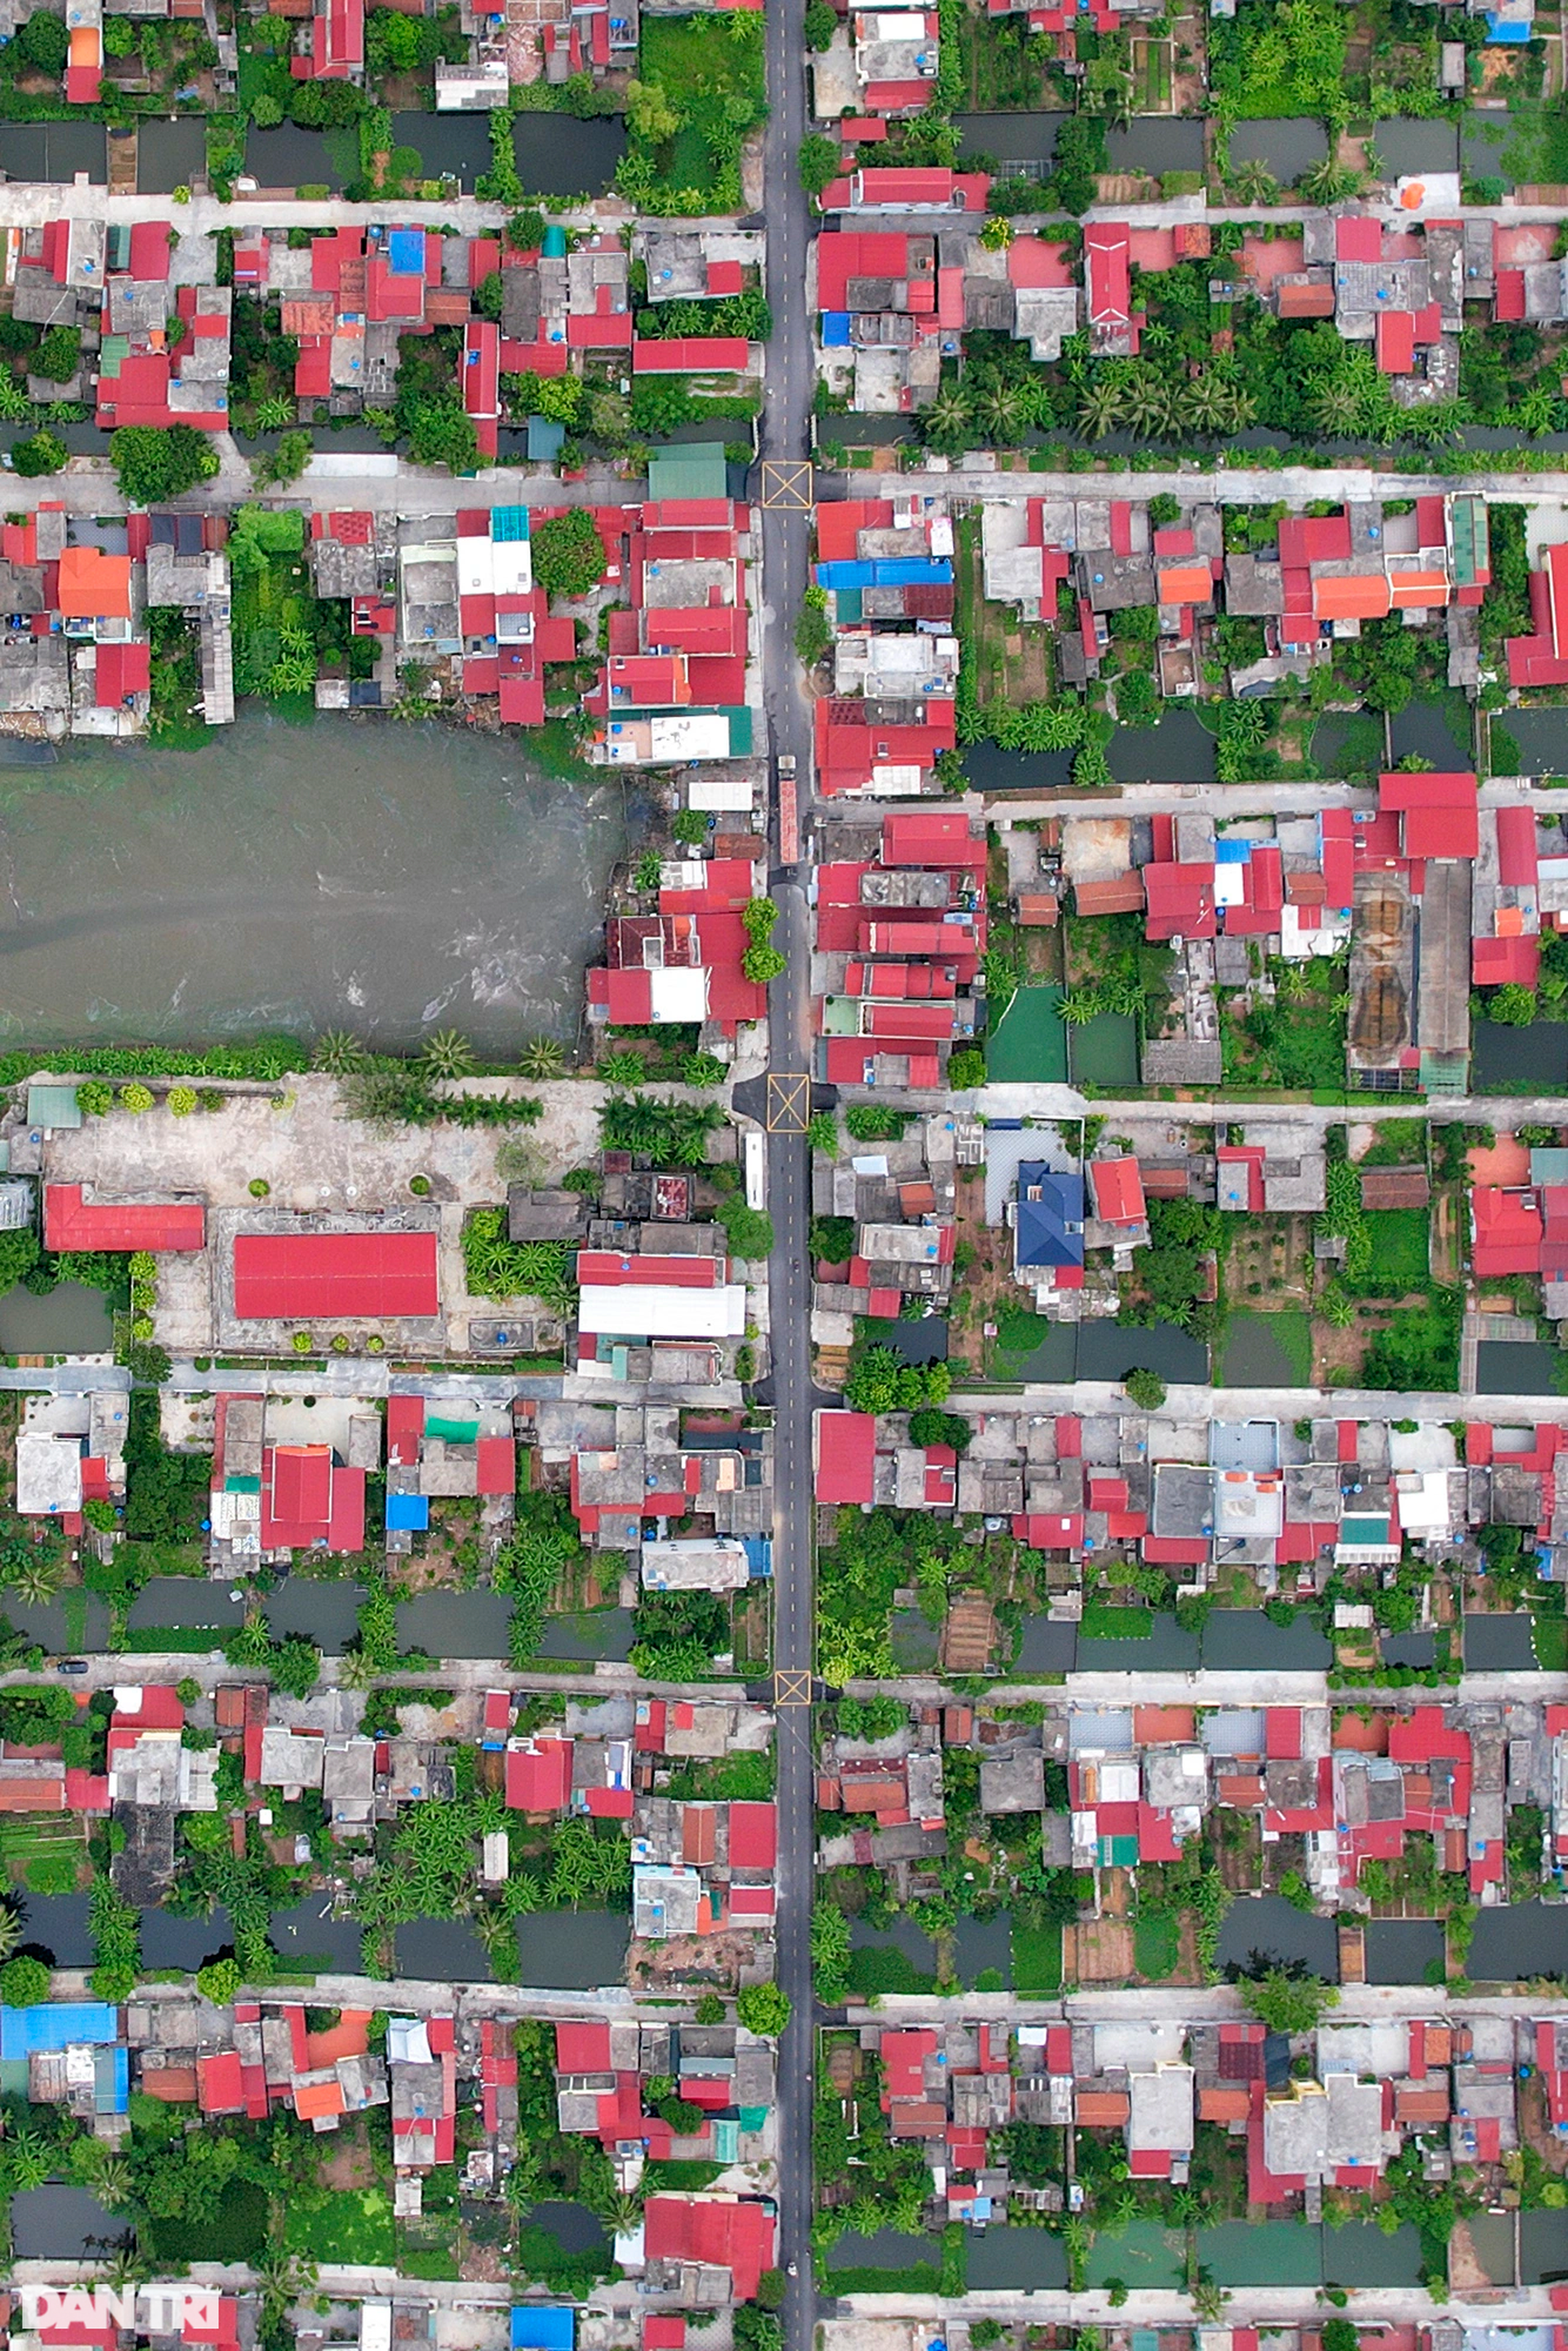 Quy hoạch bàn cờ khu dân cư đẹp như tranh ở làng ven biển Thái Bình - 8